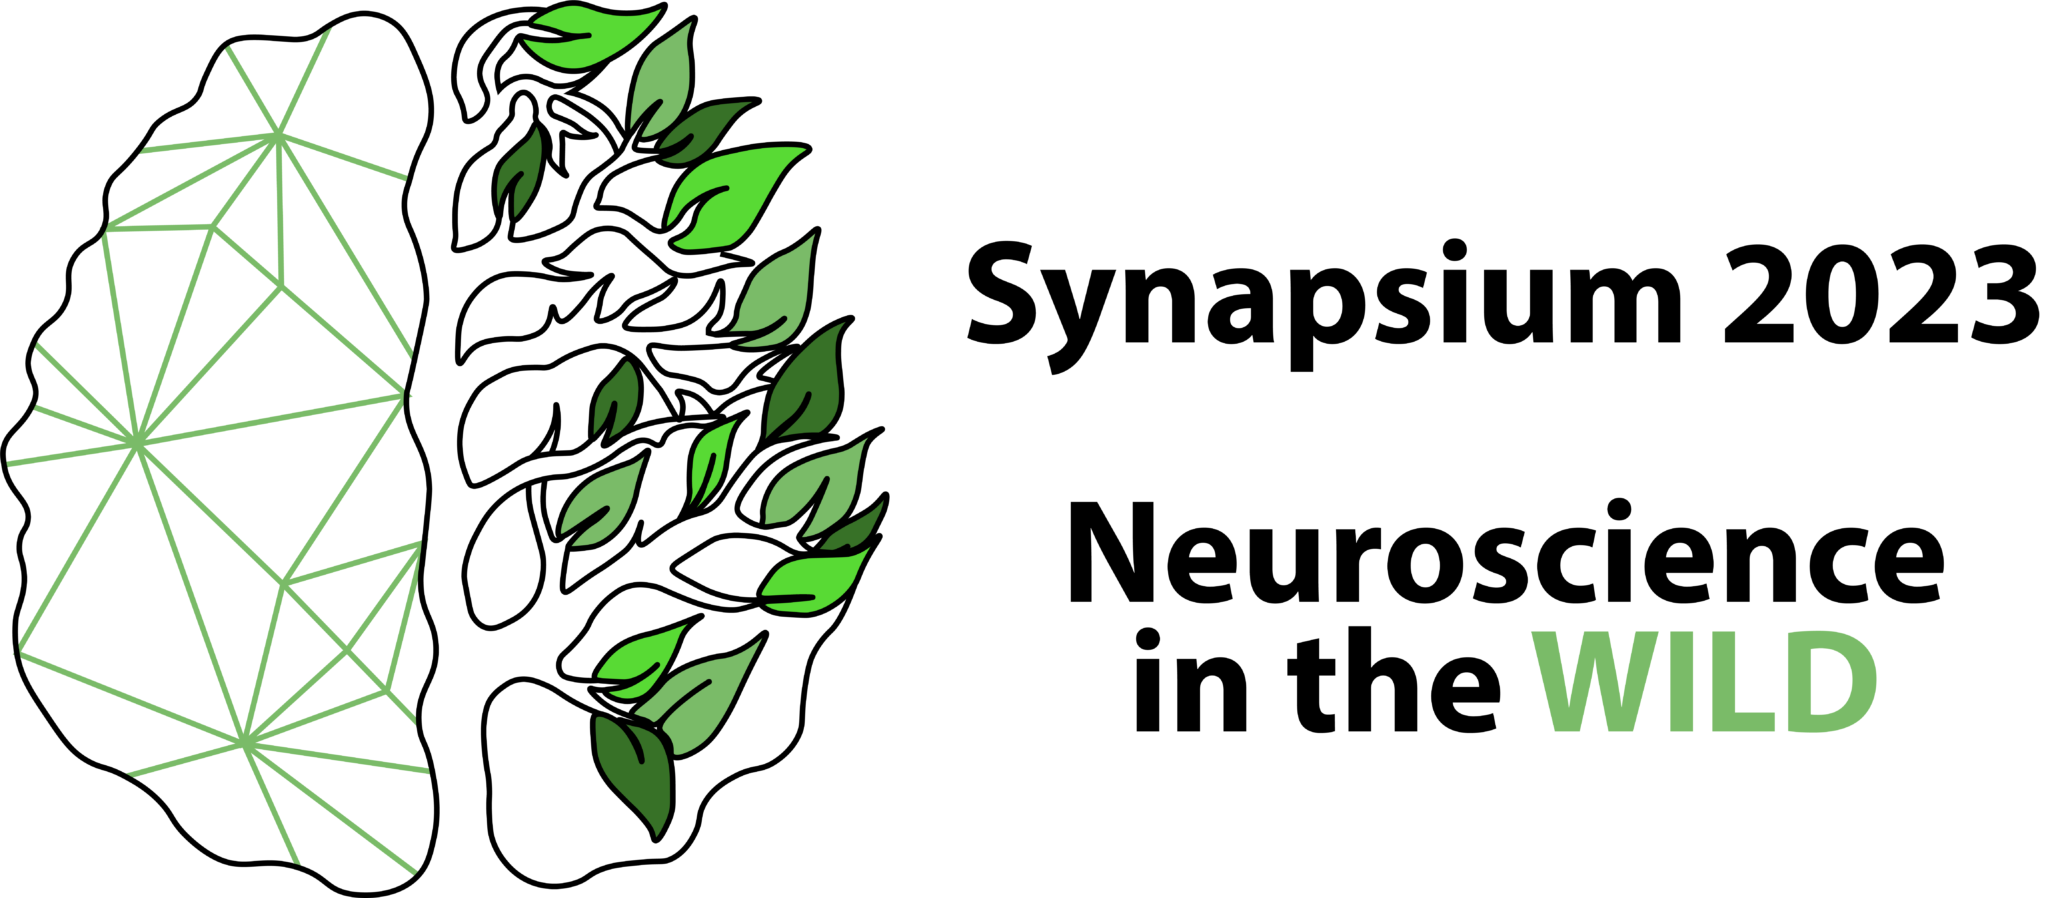 Synapsium 2023 logo with slogan horizontal white